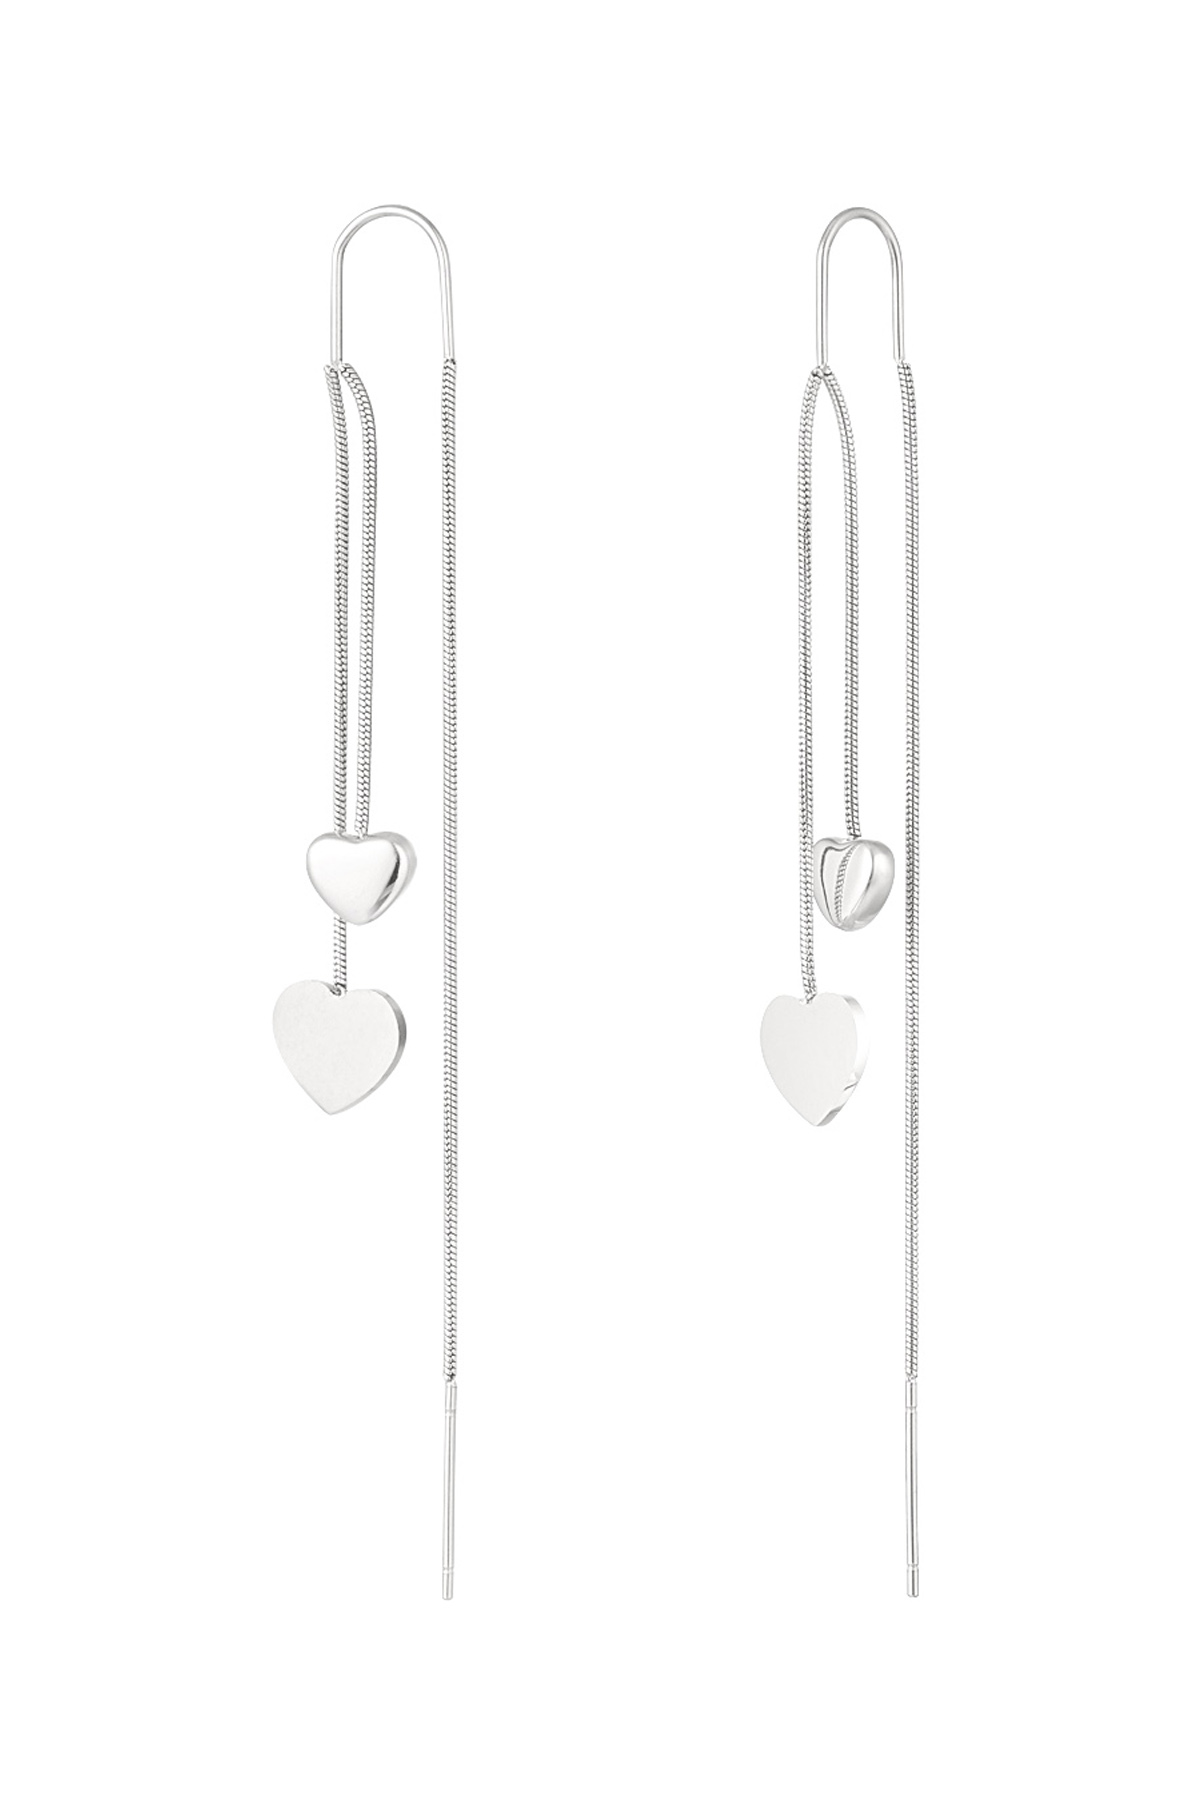 Hanging heart earrings - silver